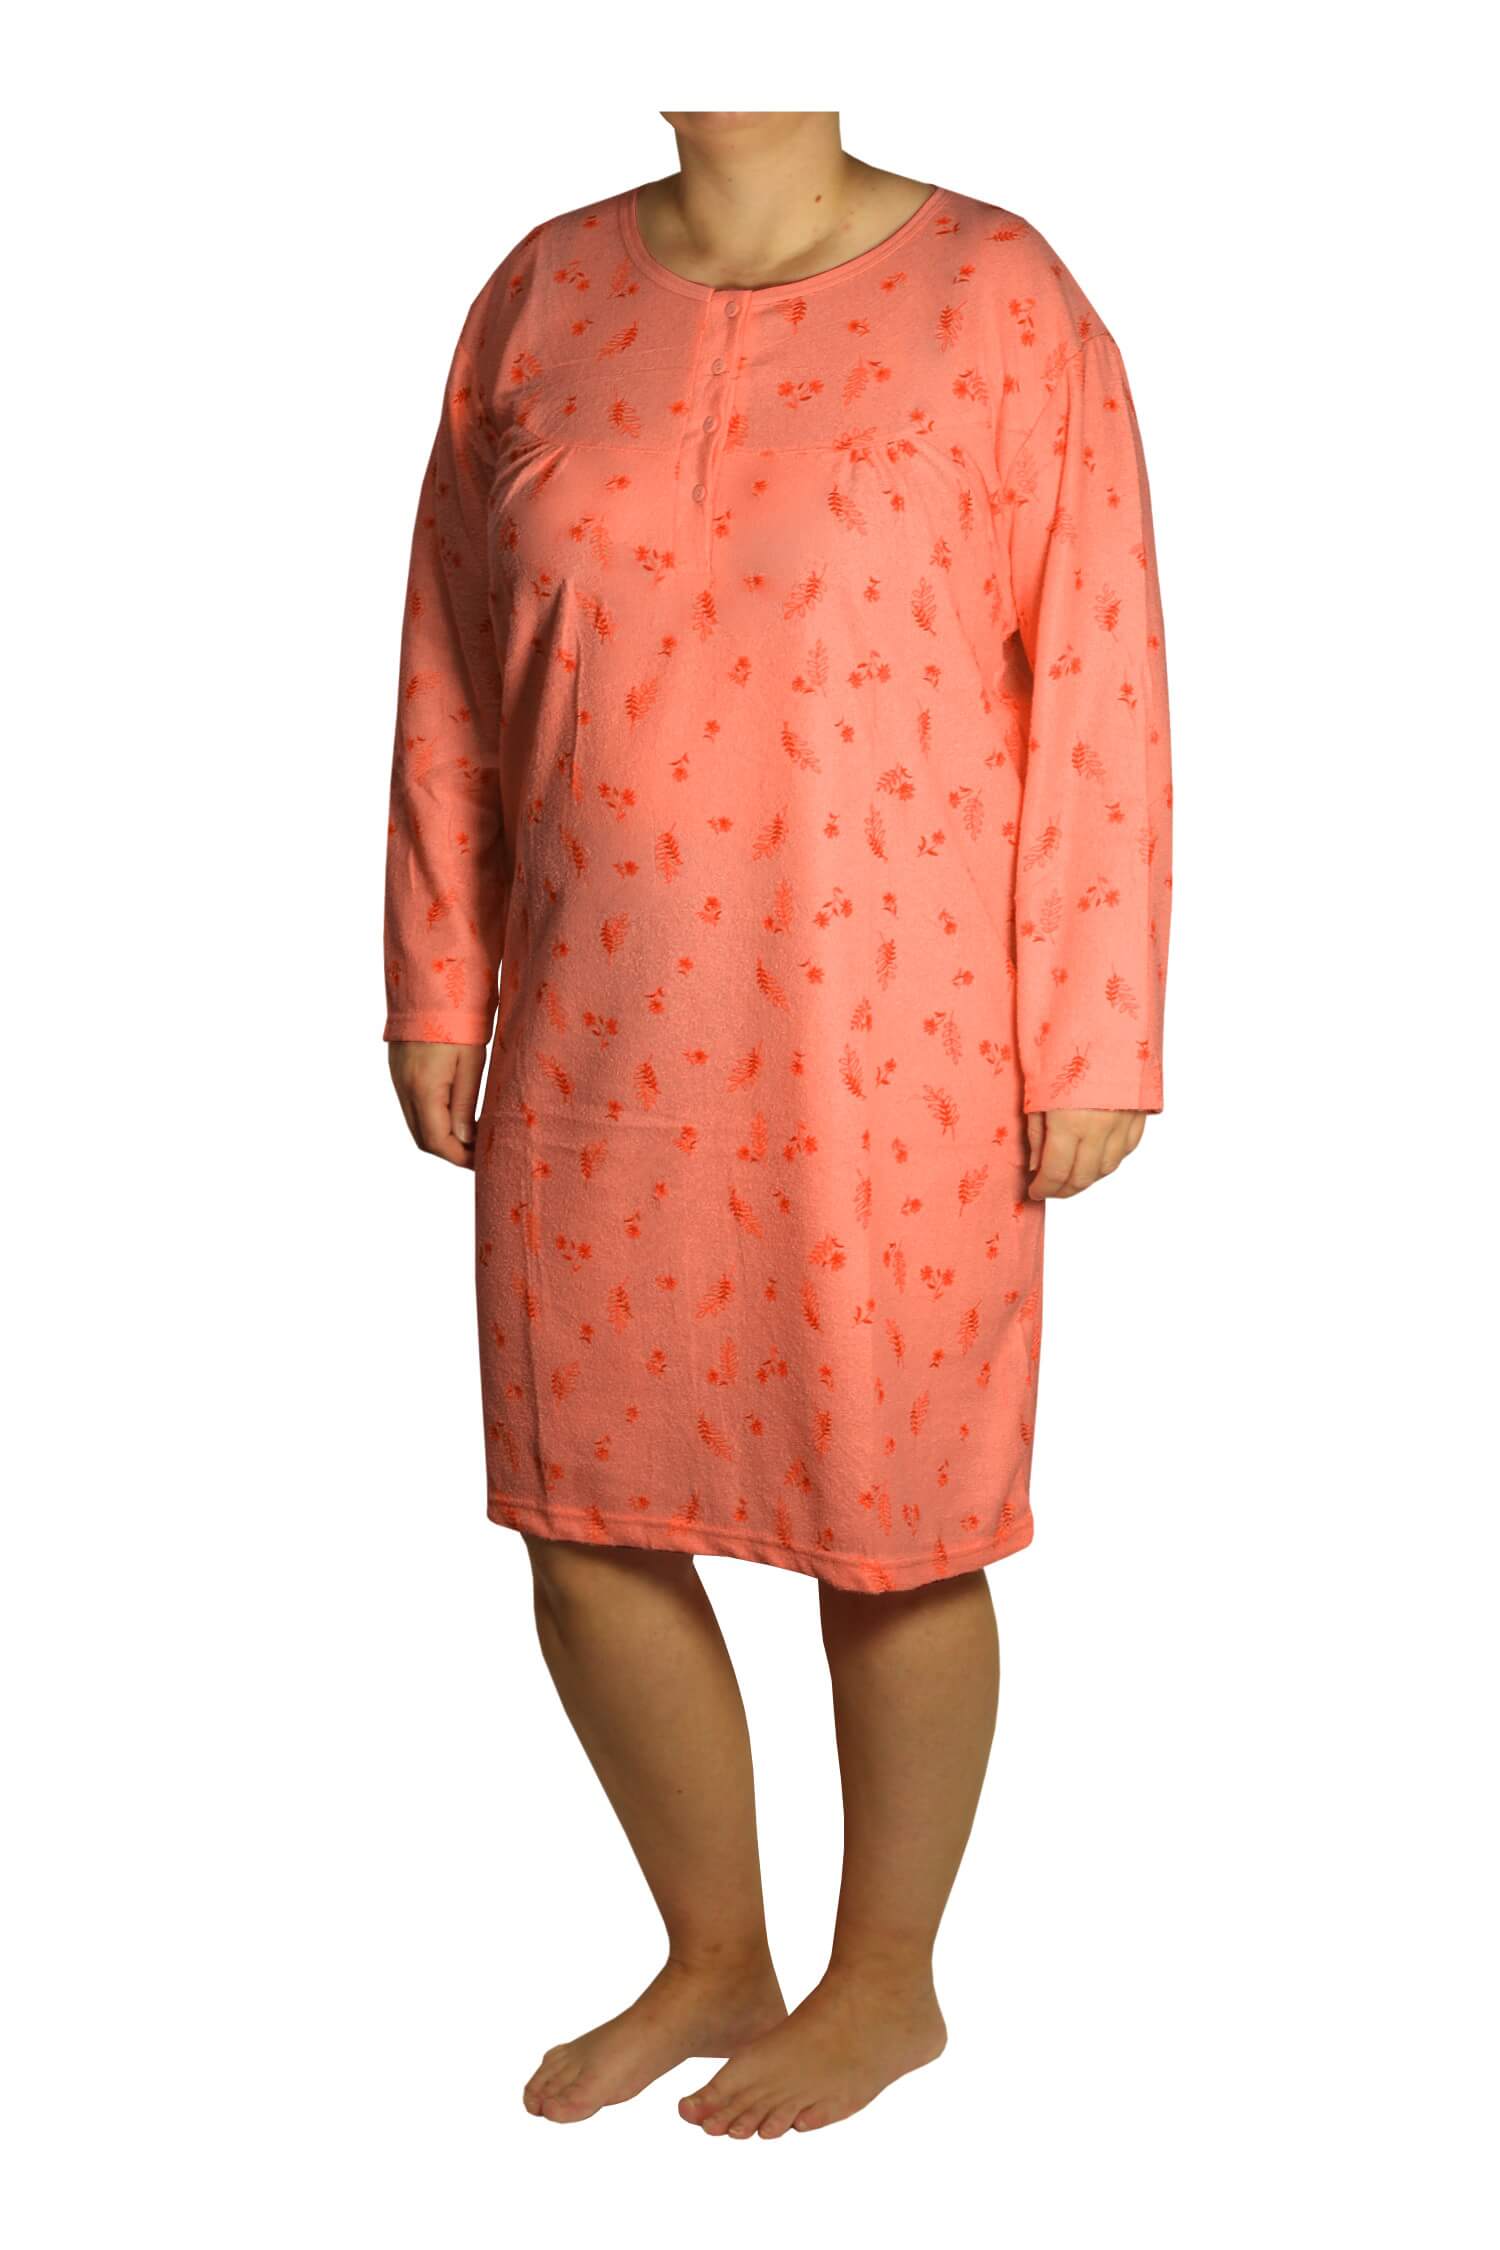 Růžena froté noční košile 1-DBGK-12 XL oranžová